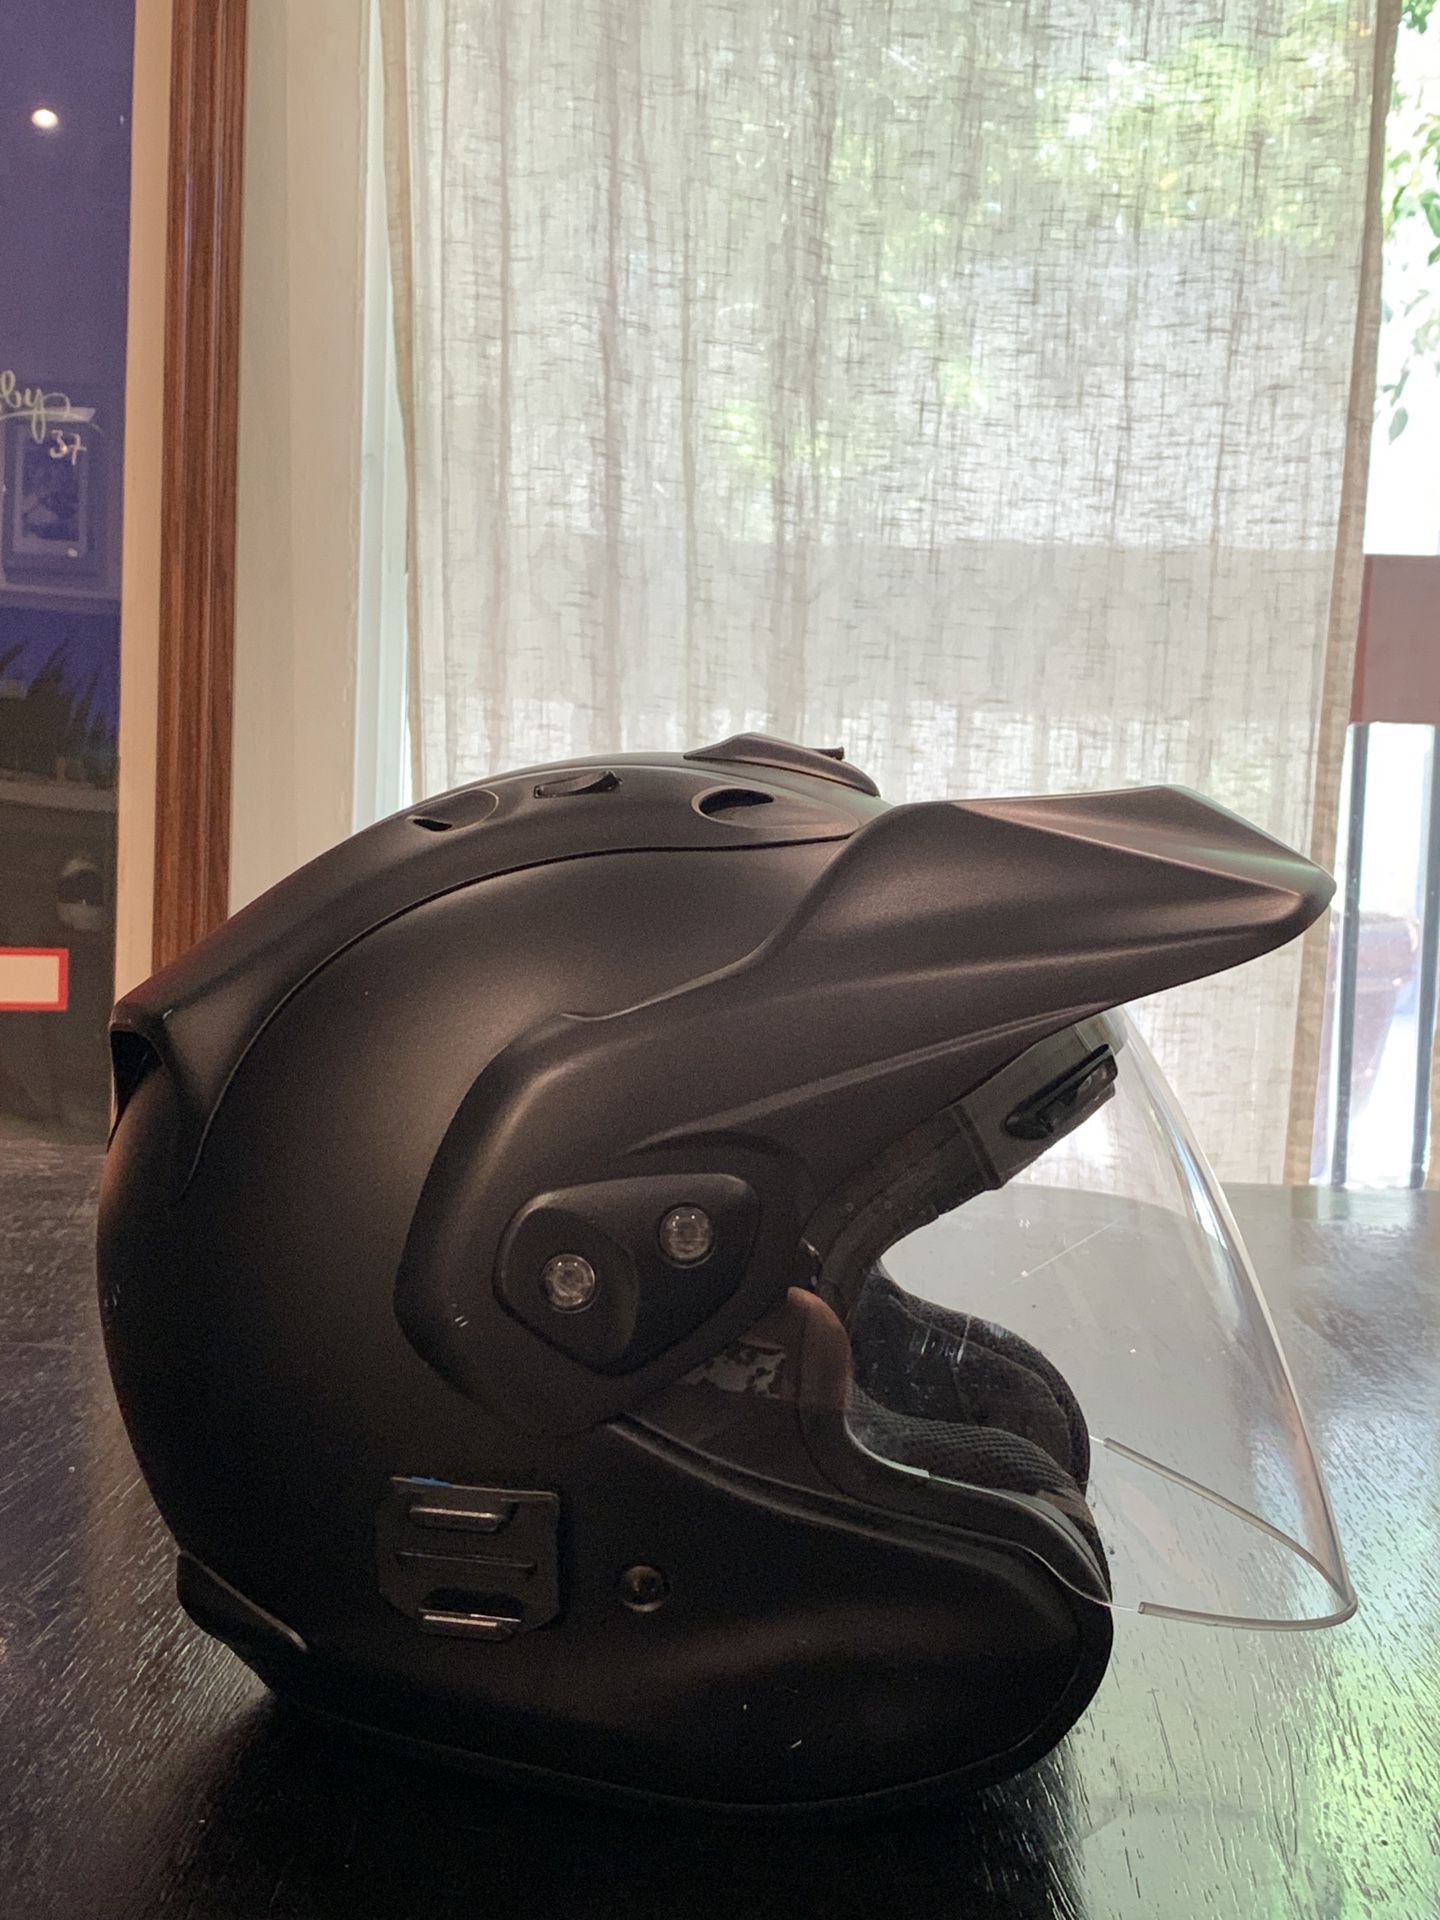 Arai CT-Z motorcycle helmet. Light wear, great condition!!